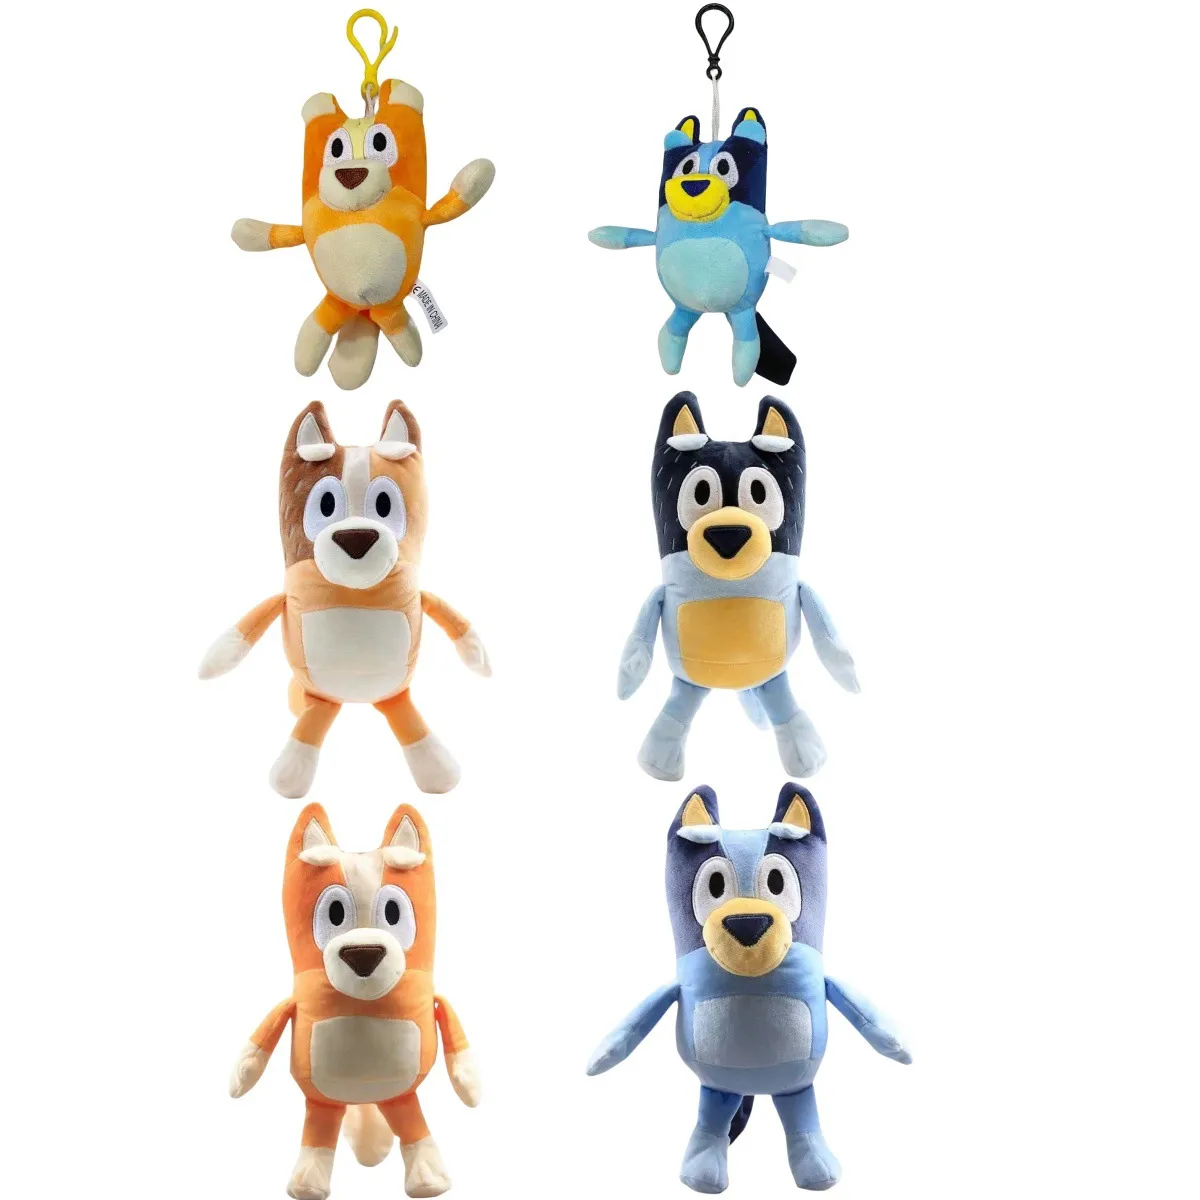 28cm 블루 가족 소프트 장난감 가와이 개 박제 장난감 물건 인형 애니메이션 그림 자동차 방 아이 장난감 인형 생일 선물